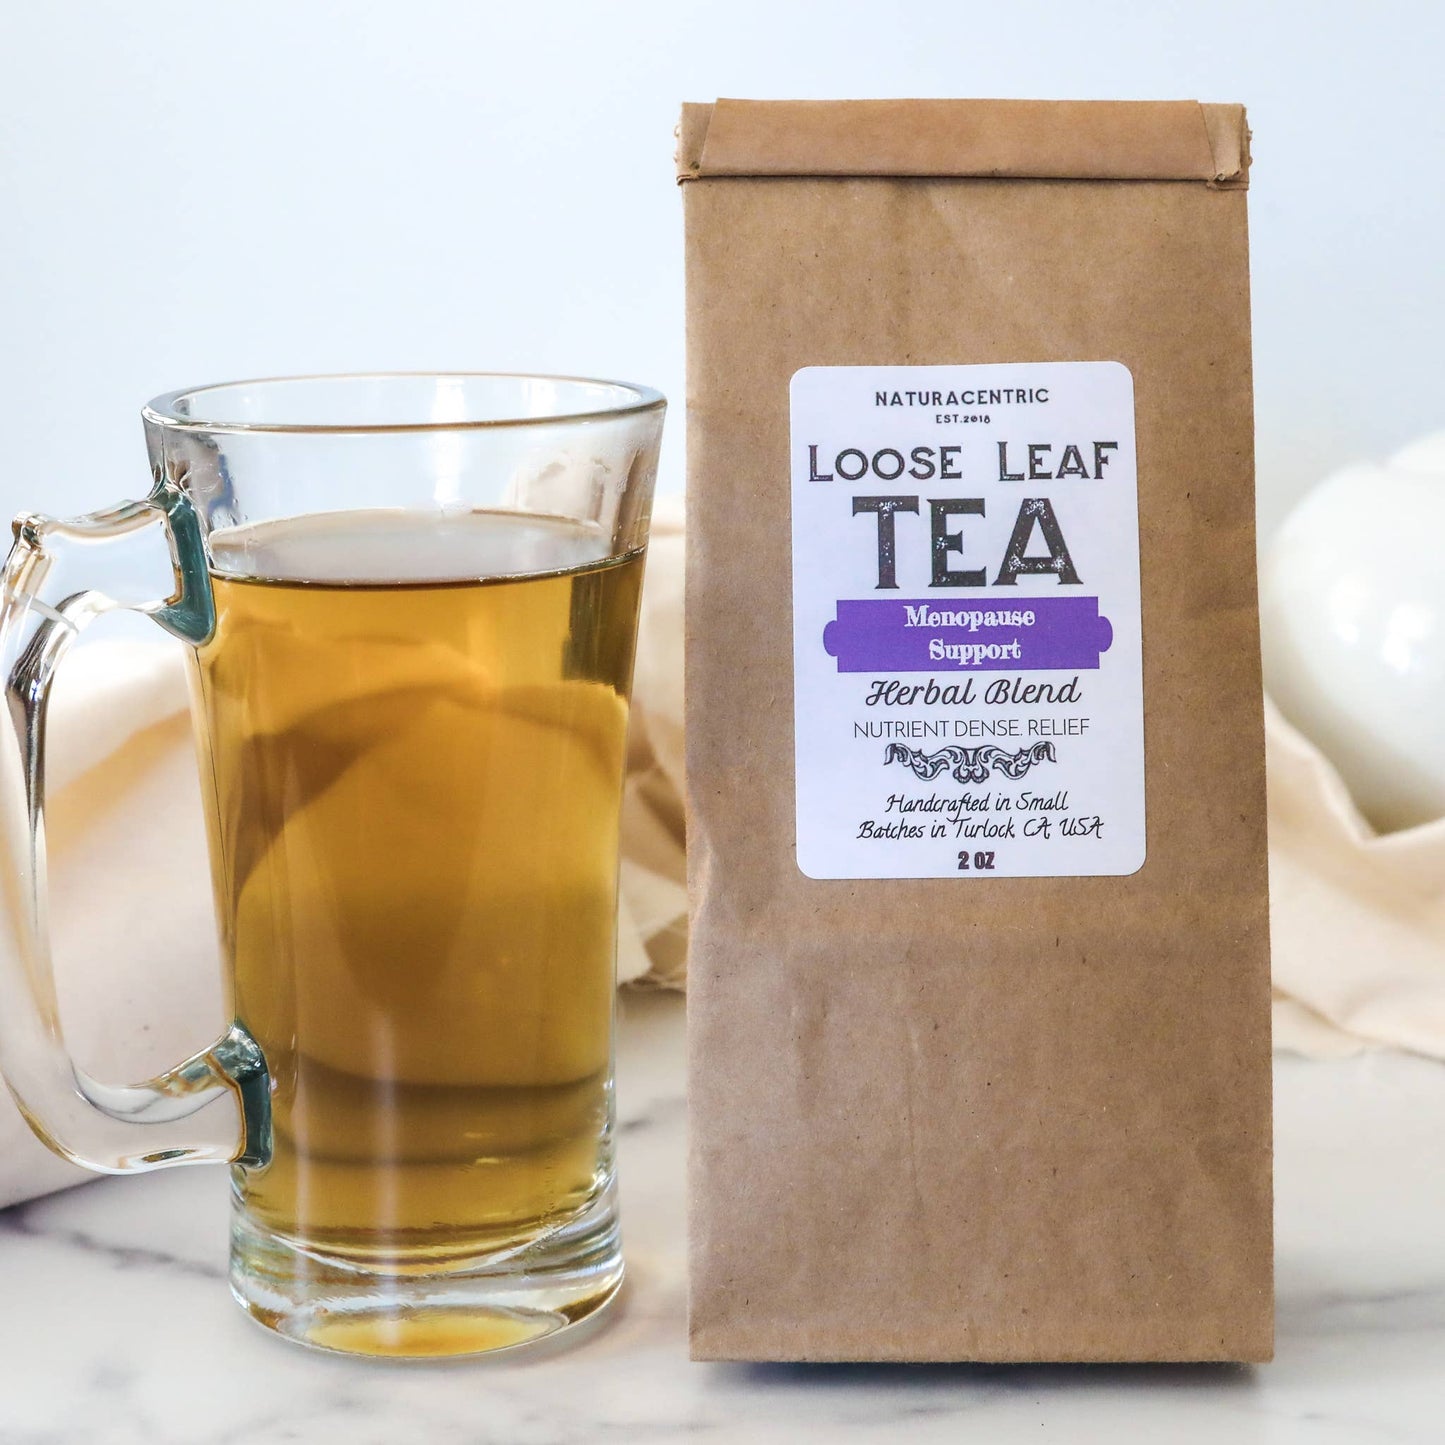 Menopause Support Loose Leaf Tea